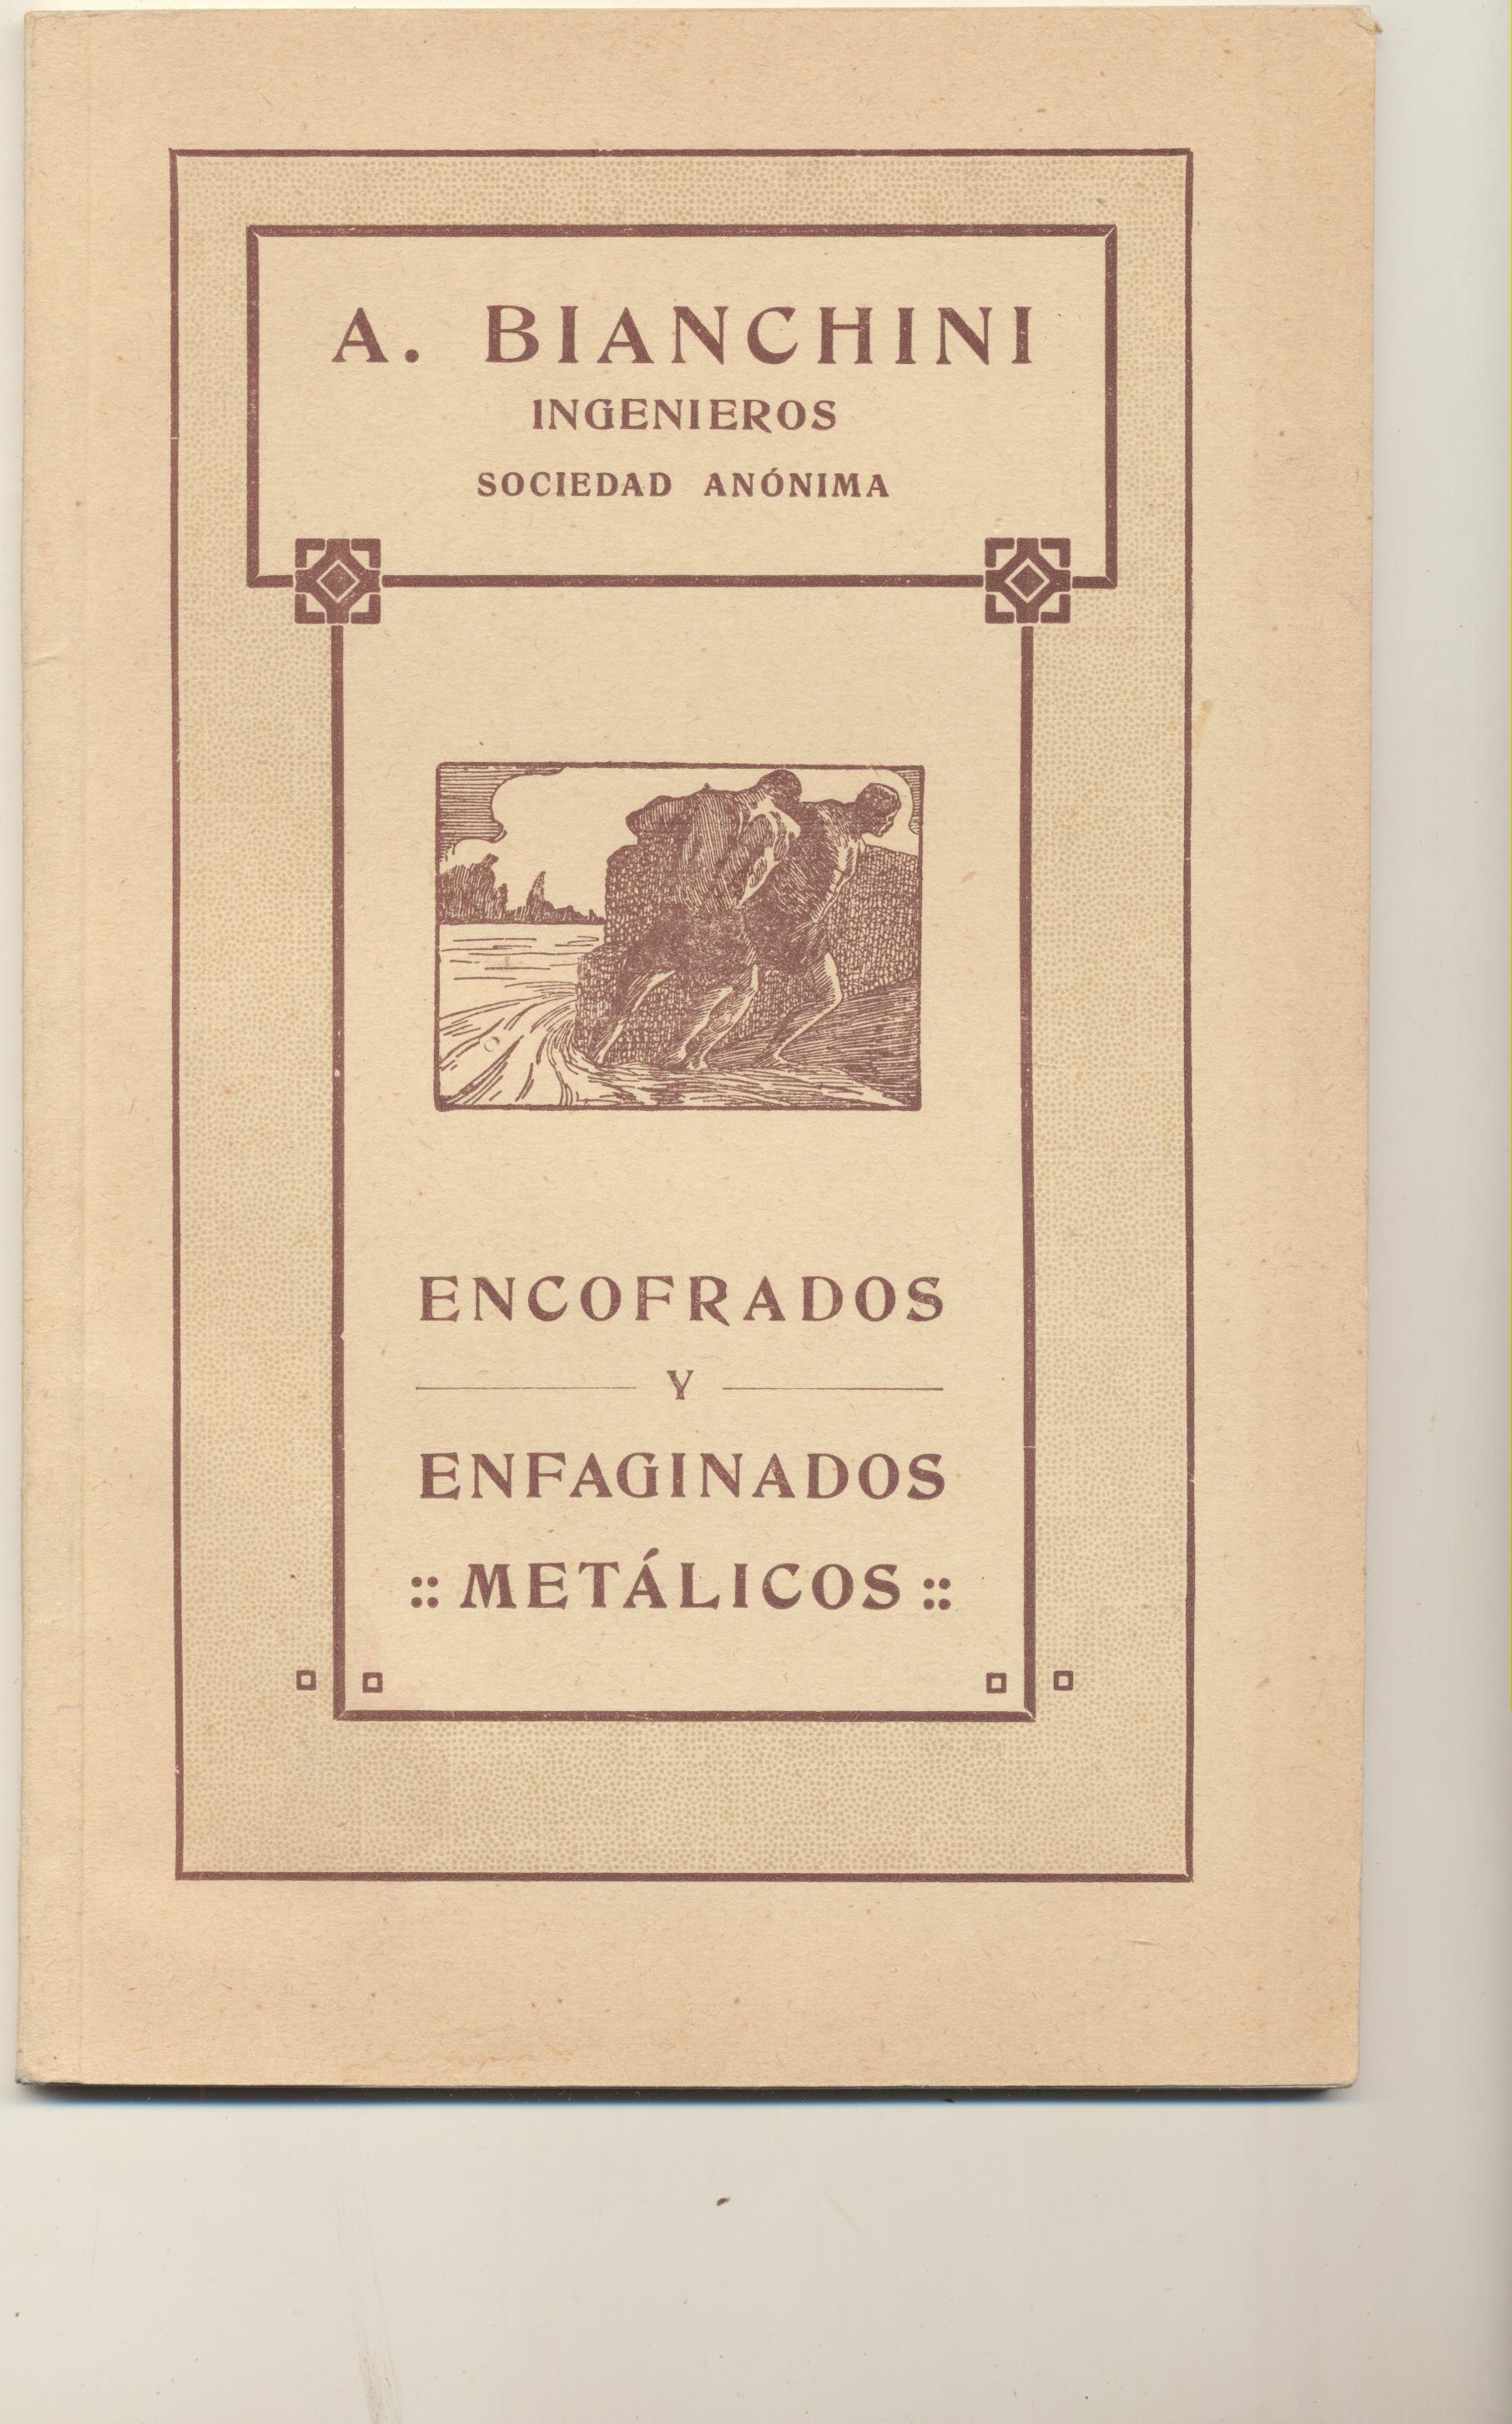 A. Bianchini. Ingenieros. Encofrados y Enfaginados Metálicos. Barcelona 1921. SIN USAR